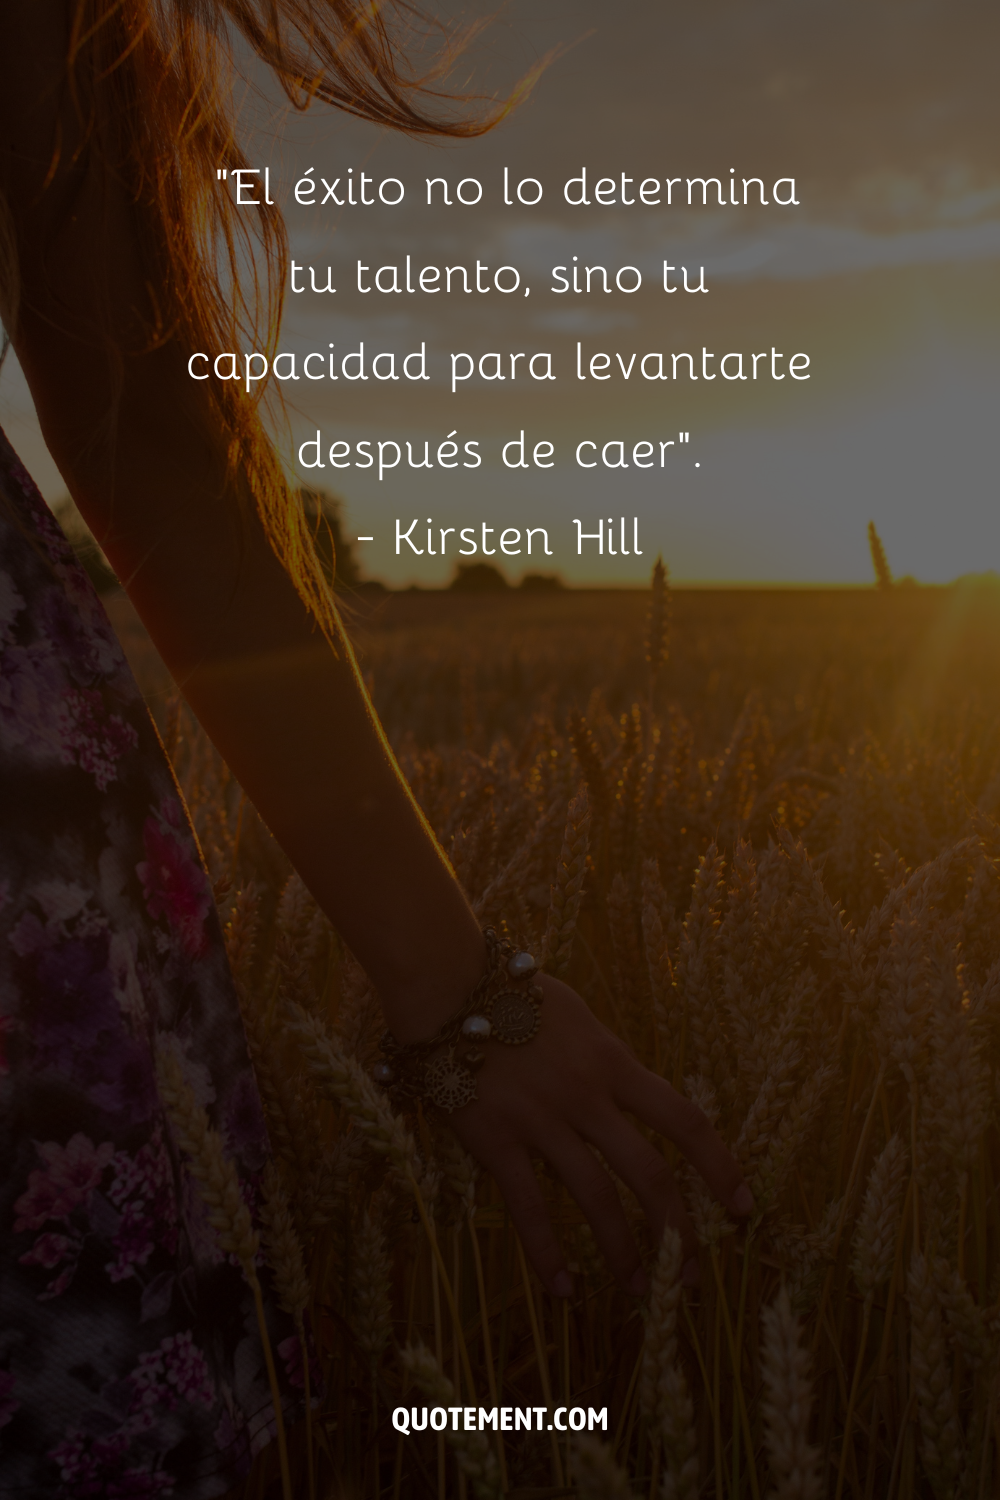 "El éxito no lo determina tu talento, sino tu capacidad para levantarte después de caer". - Kirsten Hill